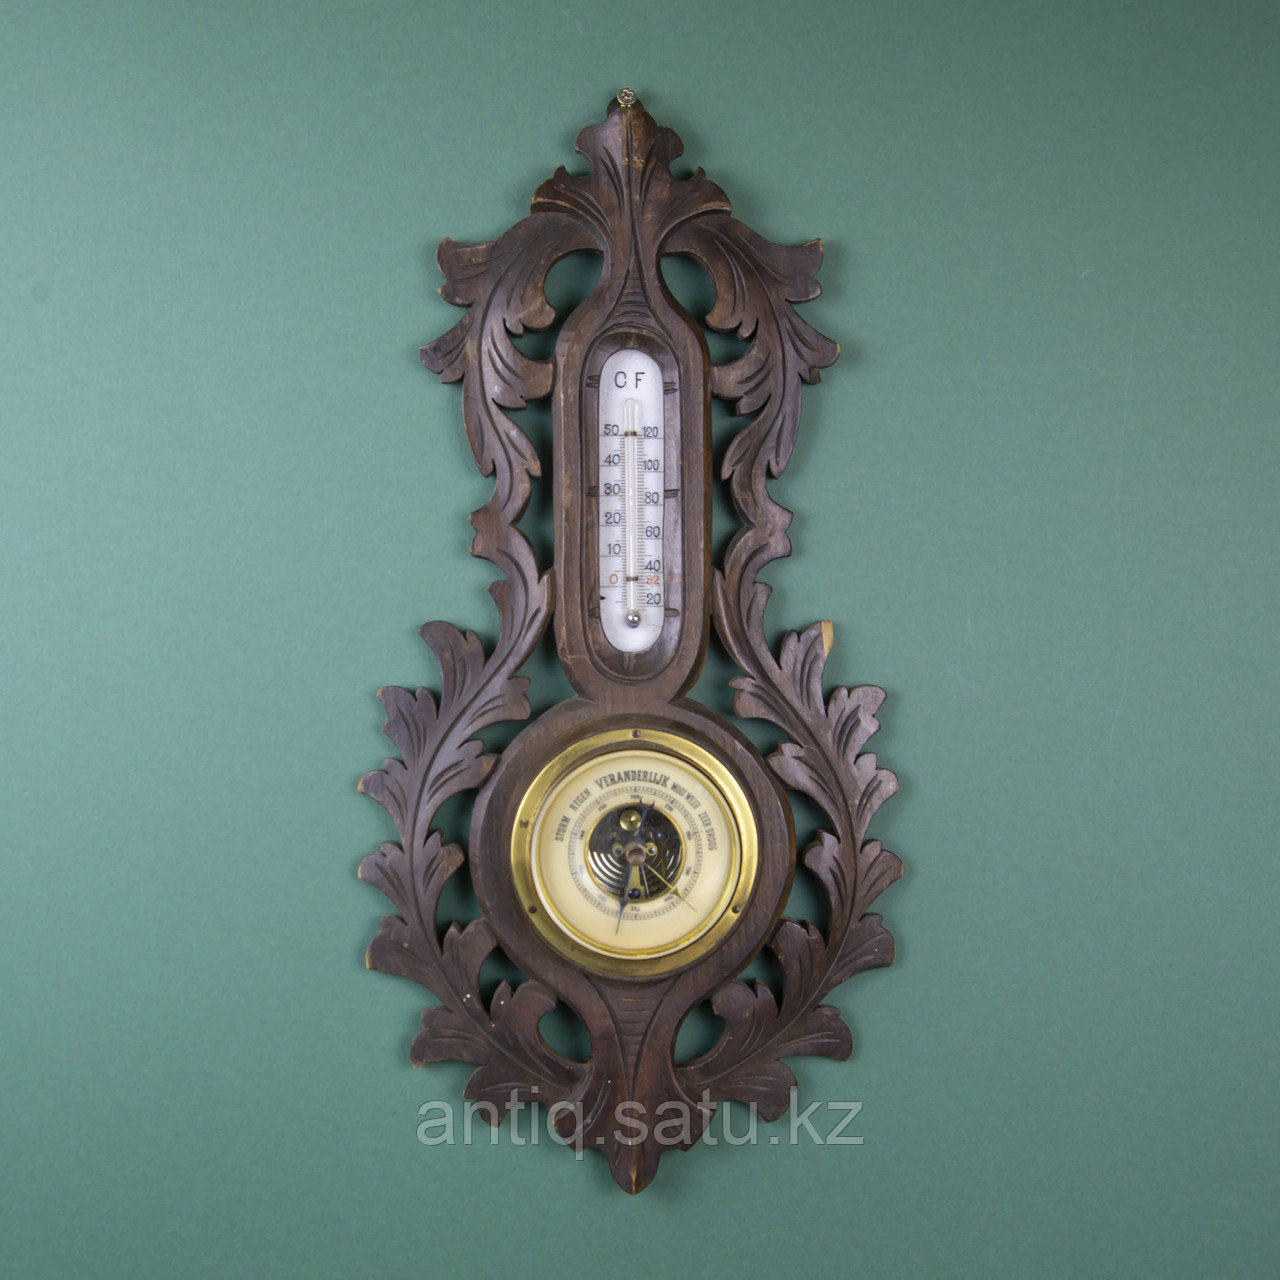 Старинный барометр с термометром.